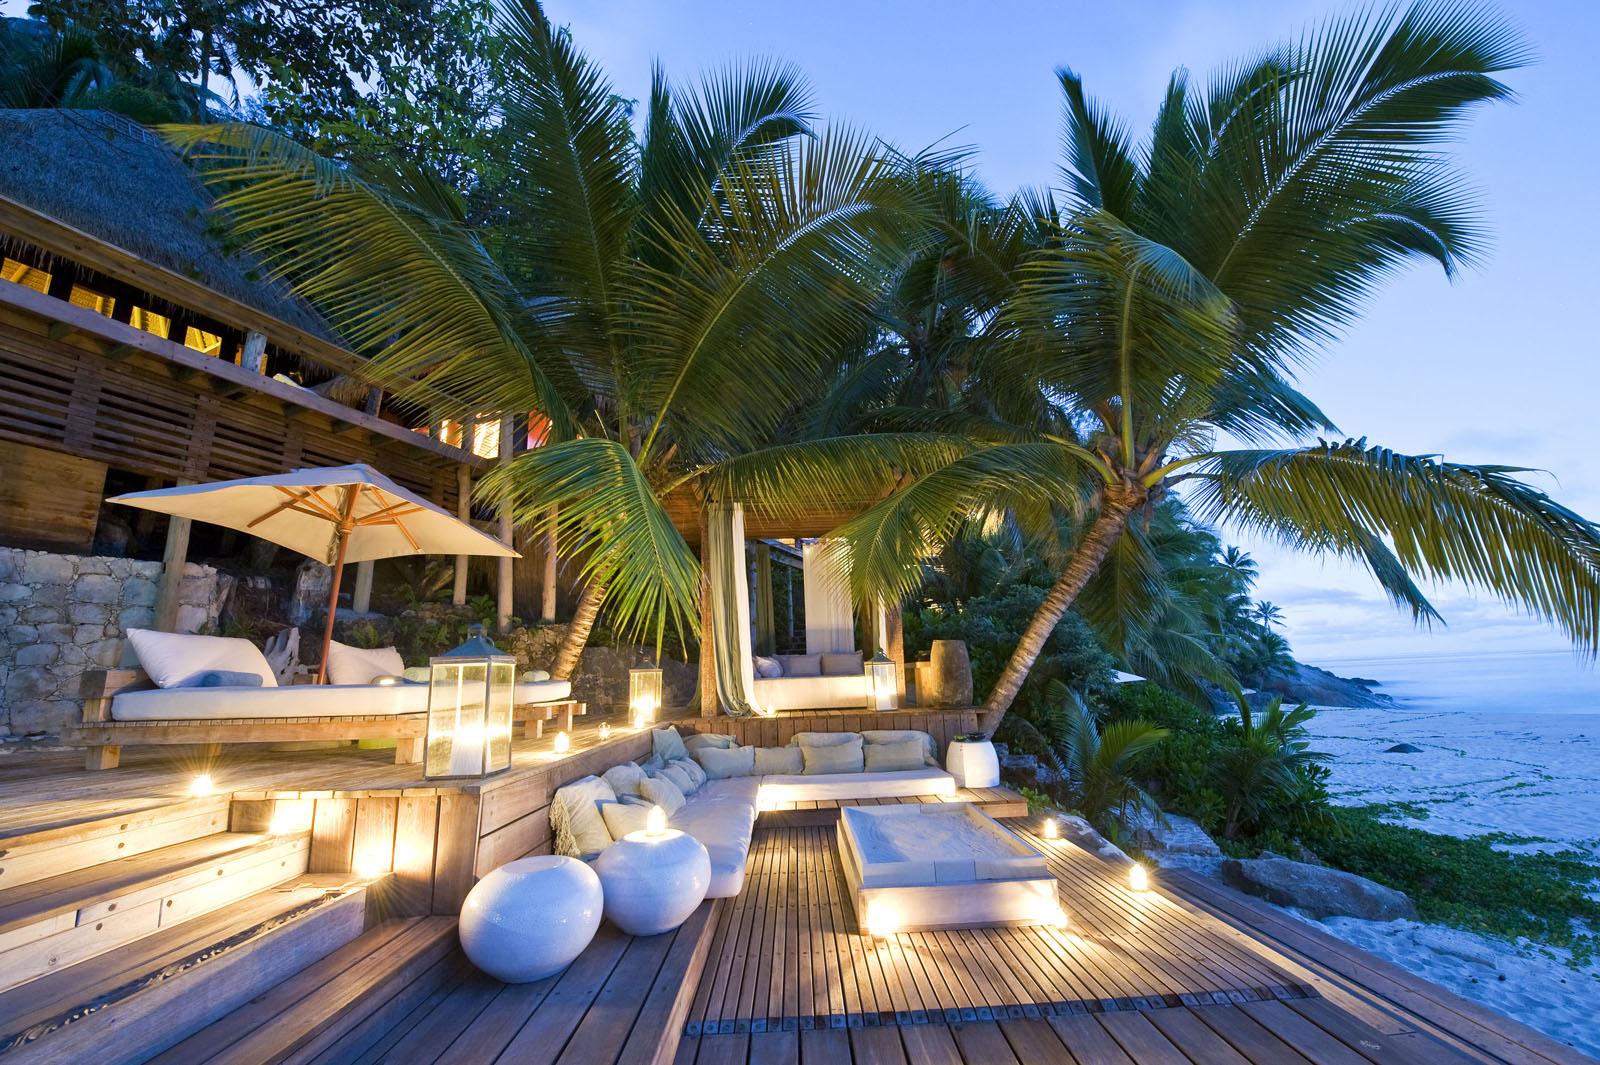 L'île-hôtel de North Island, aux Seychelles